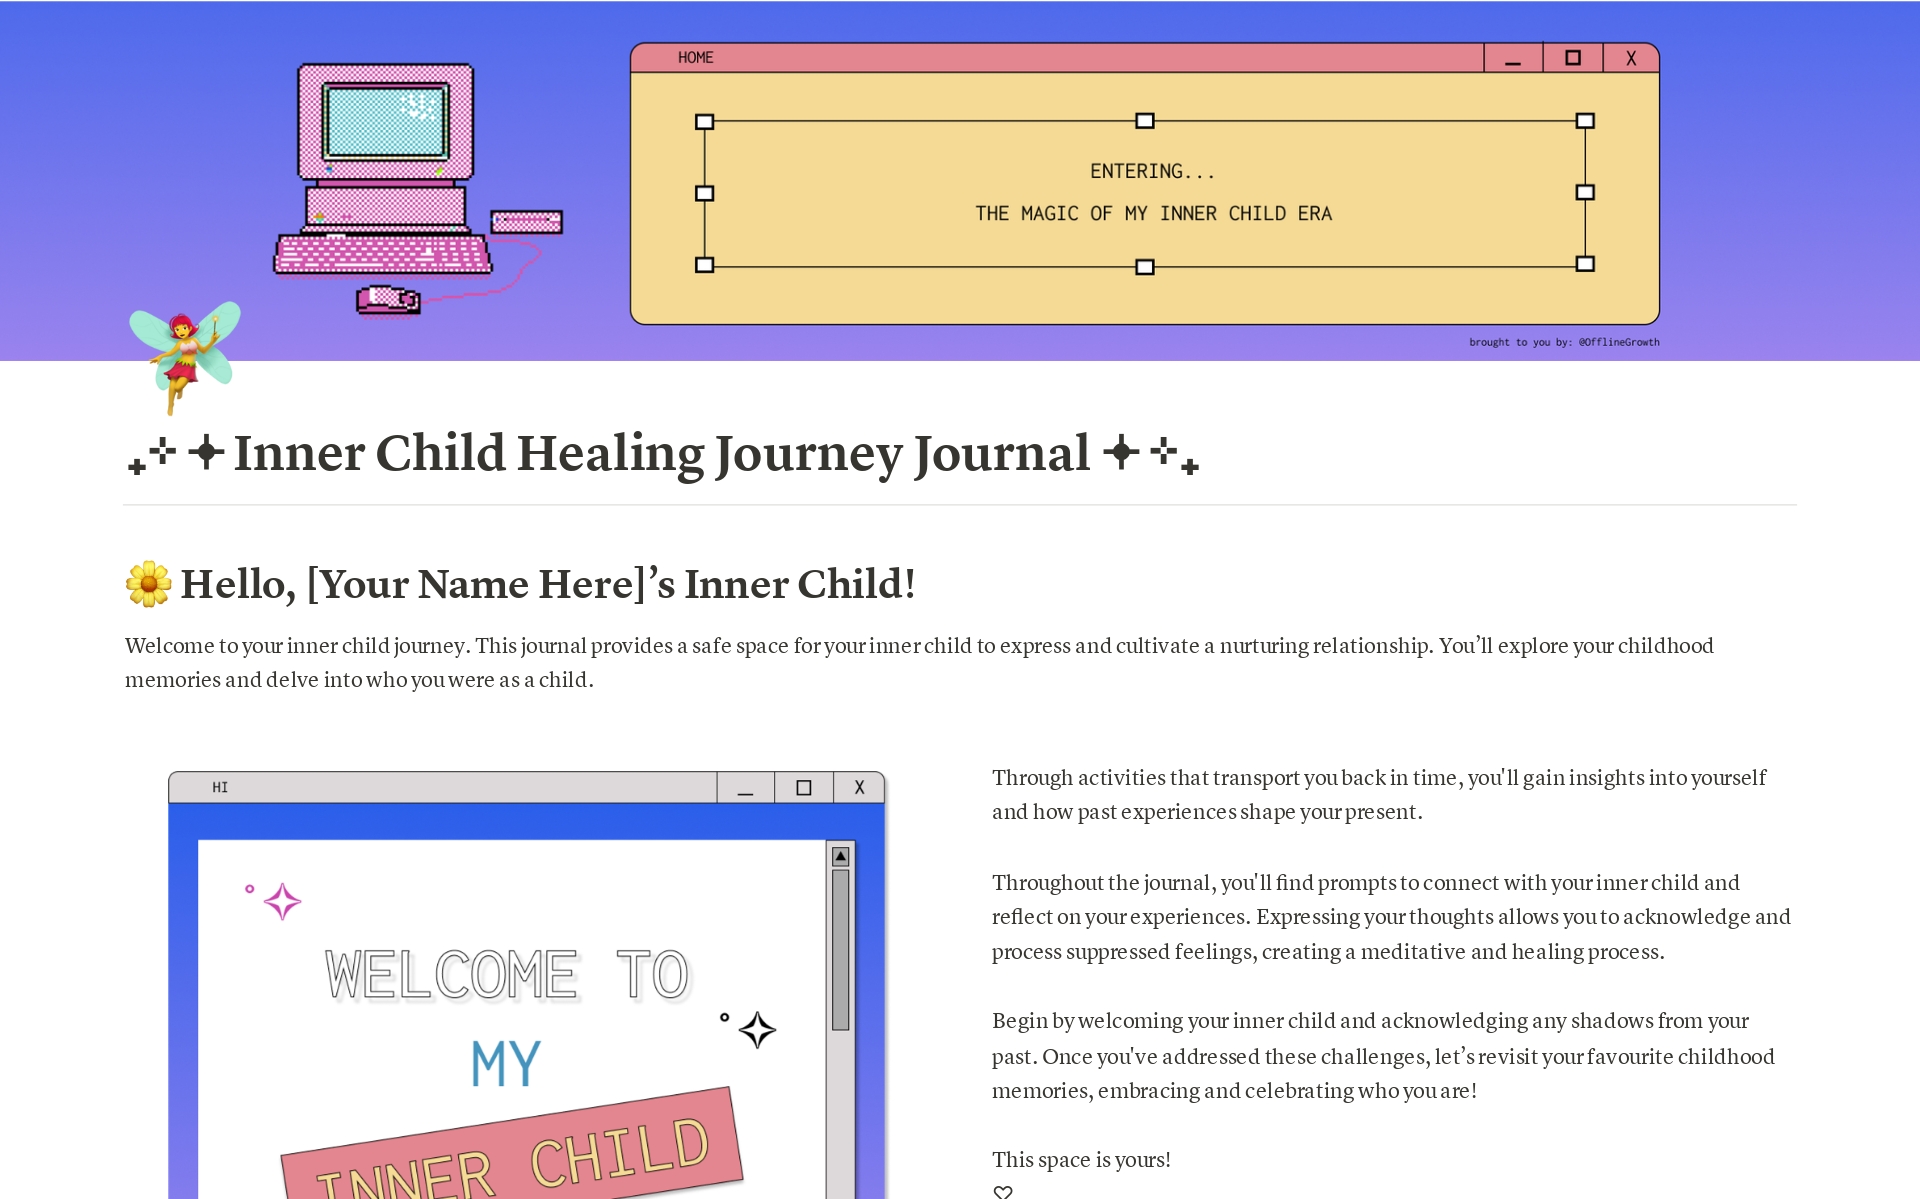 Uma prévia do modelo para Inner Child Healing Journey Journal